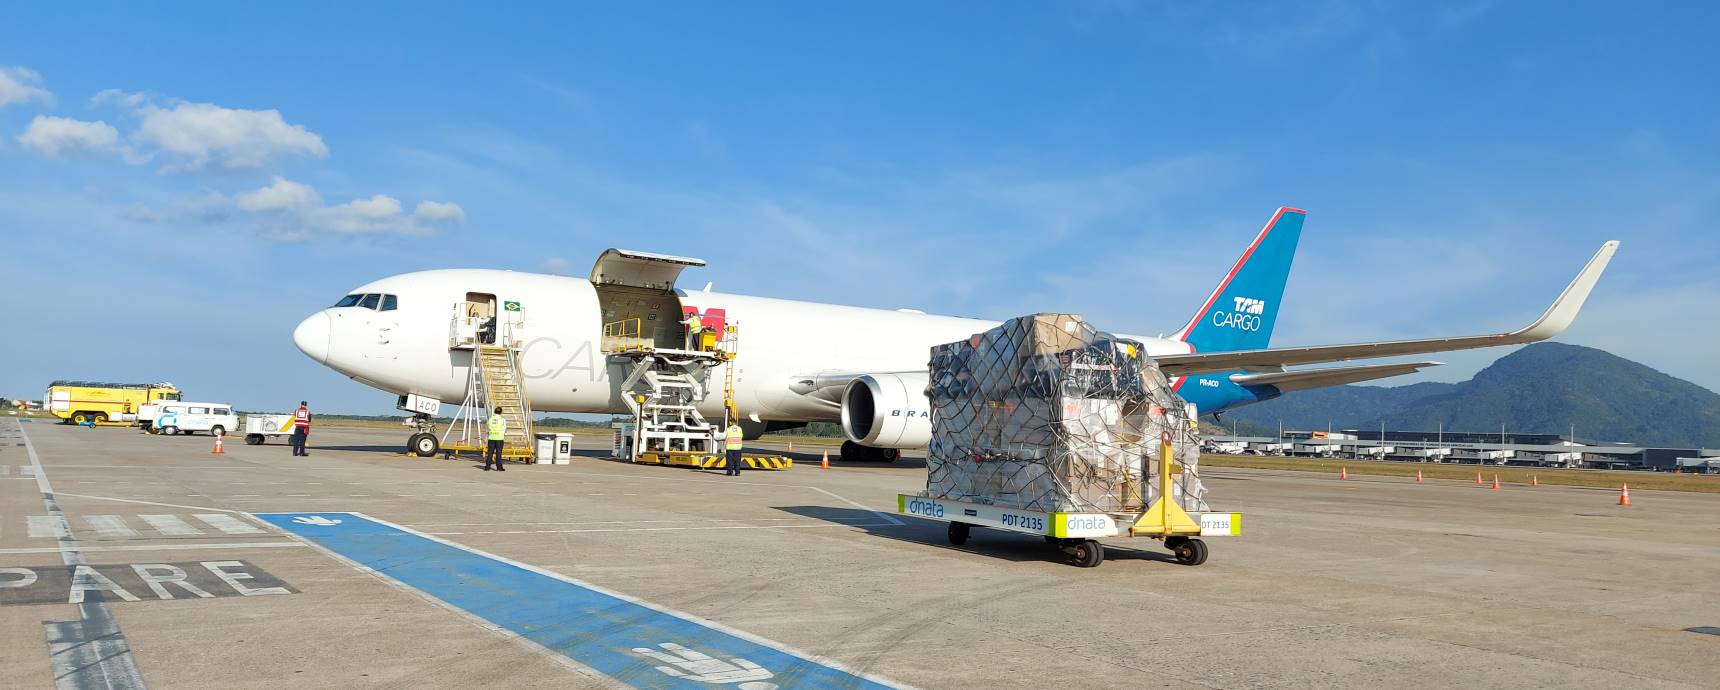 Floripa Airport Cargo participa en Logistique 2022